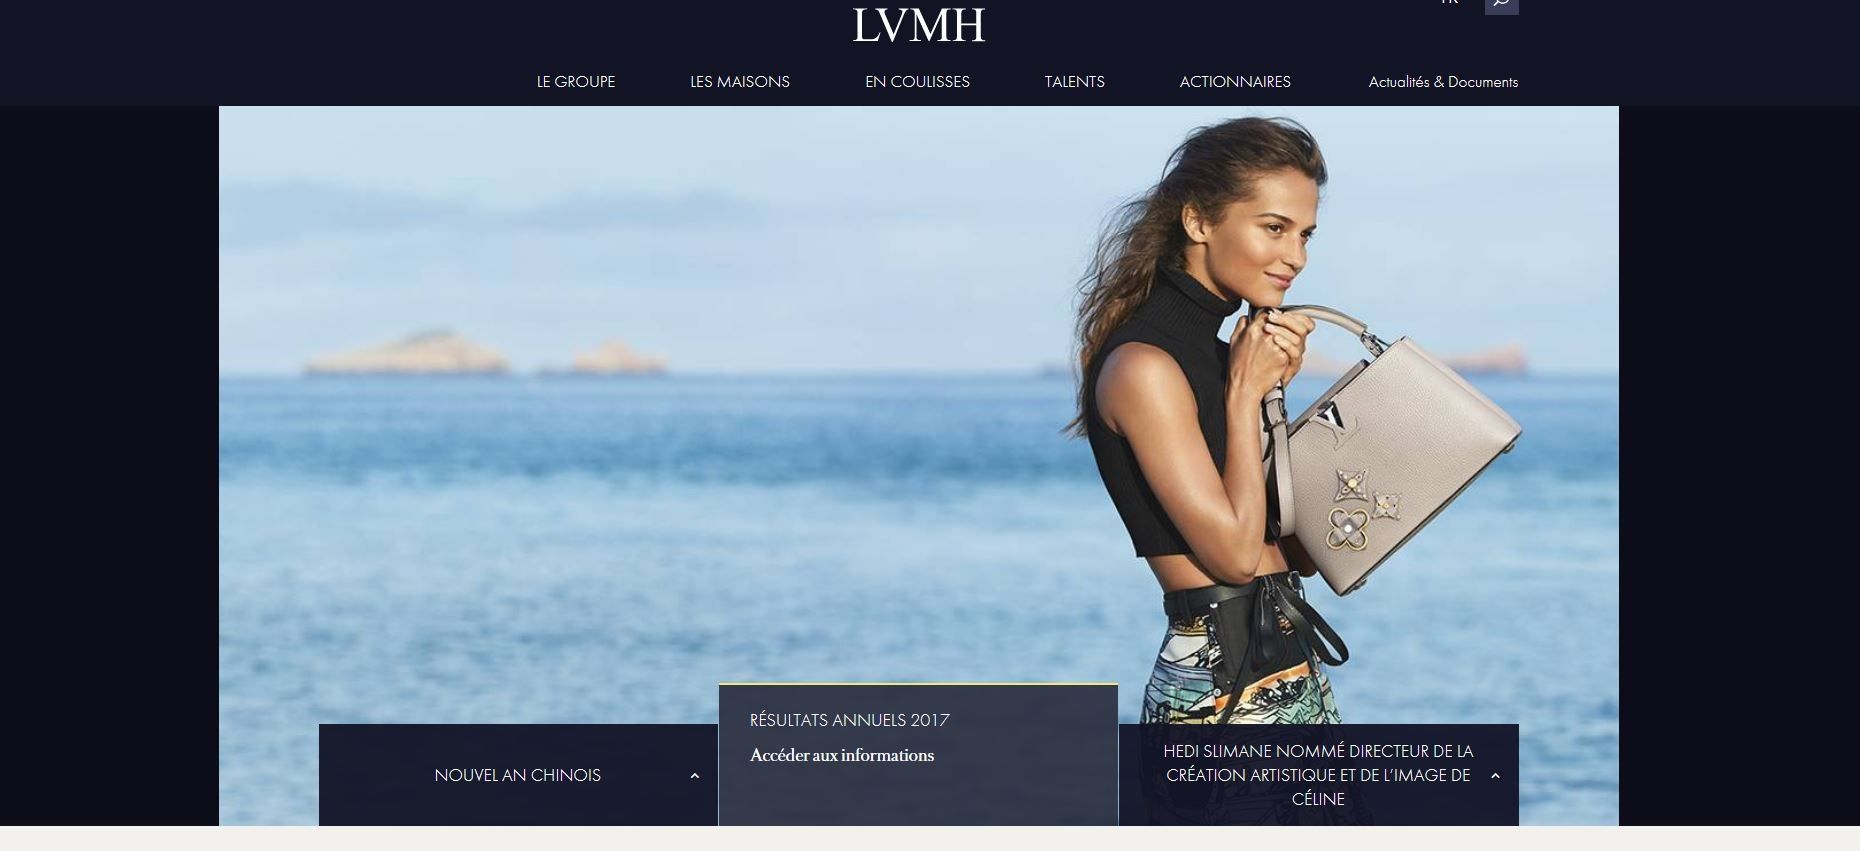 LVMH lance un dispositif digital dédié aux jeunes talents - Talents 